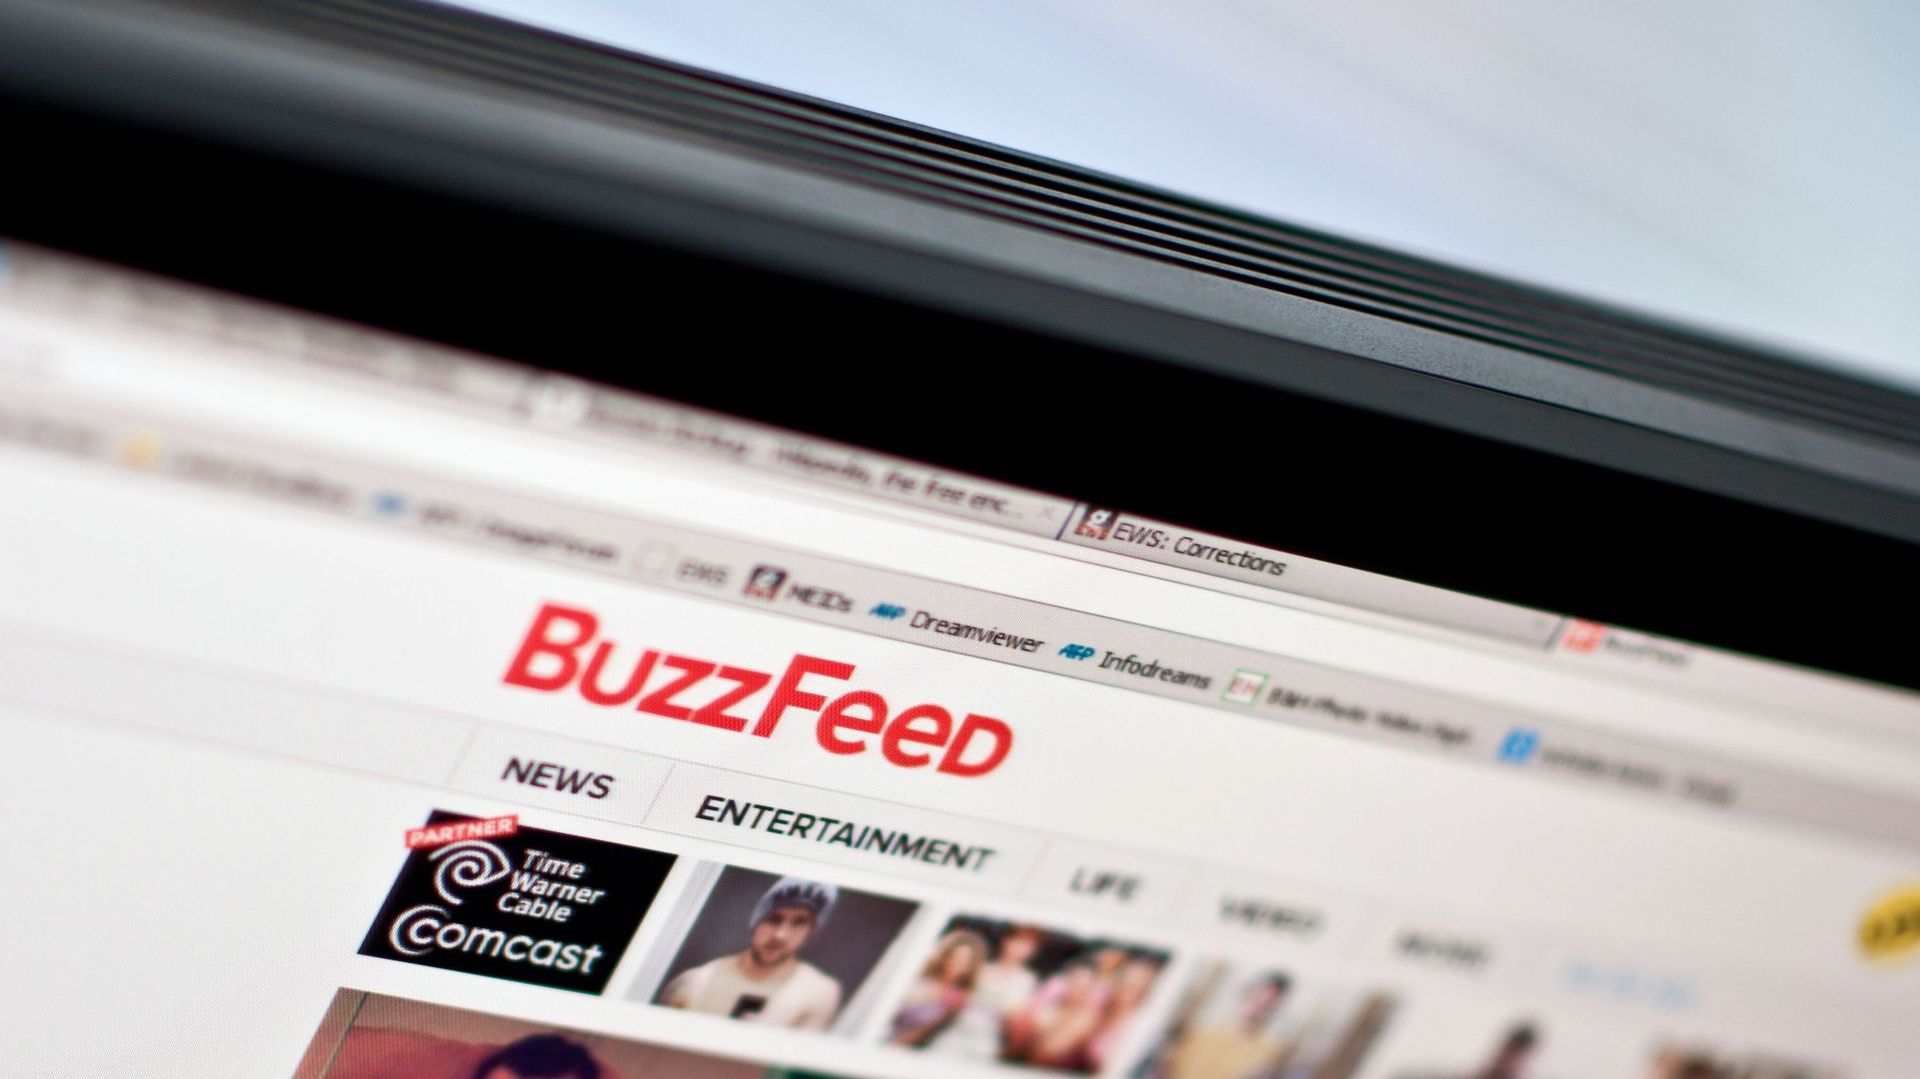 BuzzFeed souhaite diversifier ses sources de revenus et faire appel à d'autres compétences.